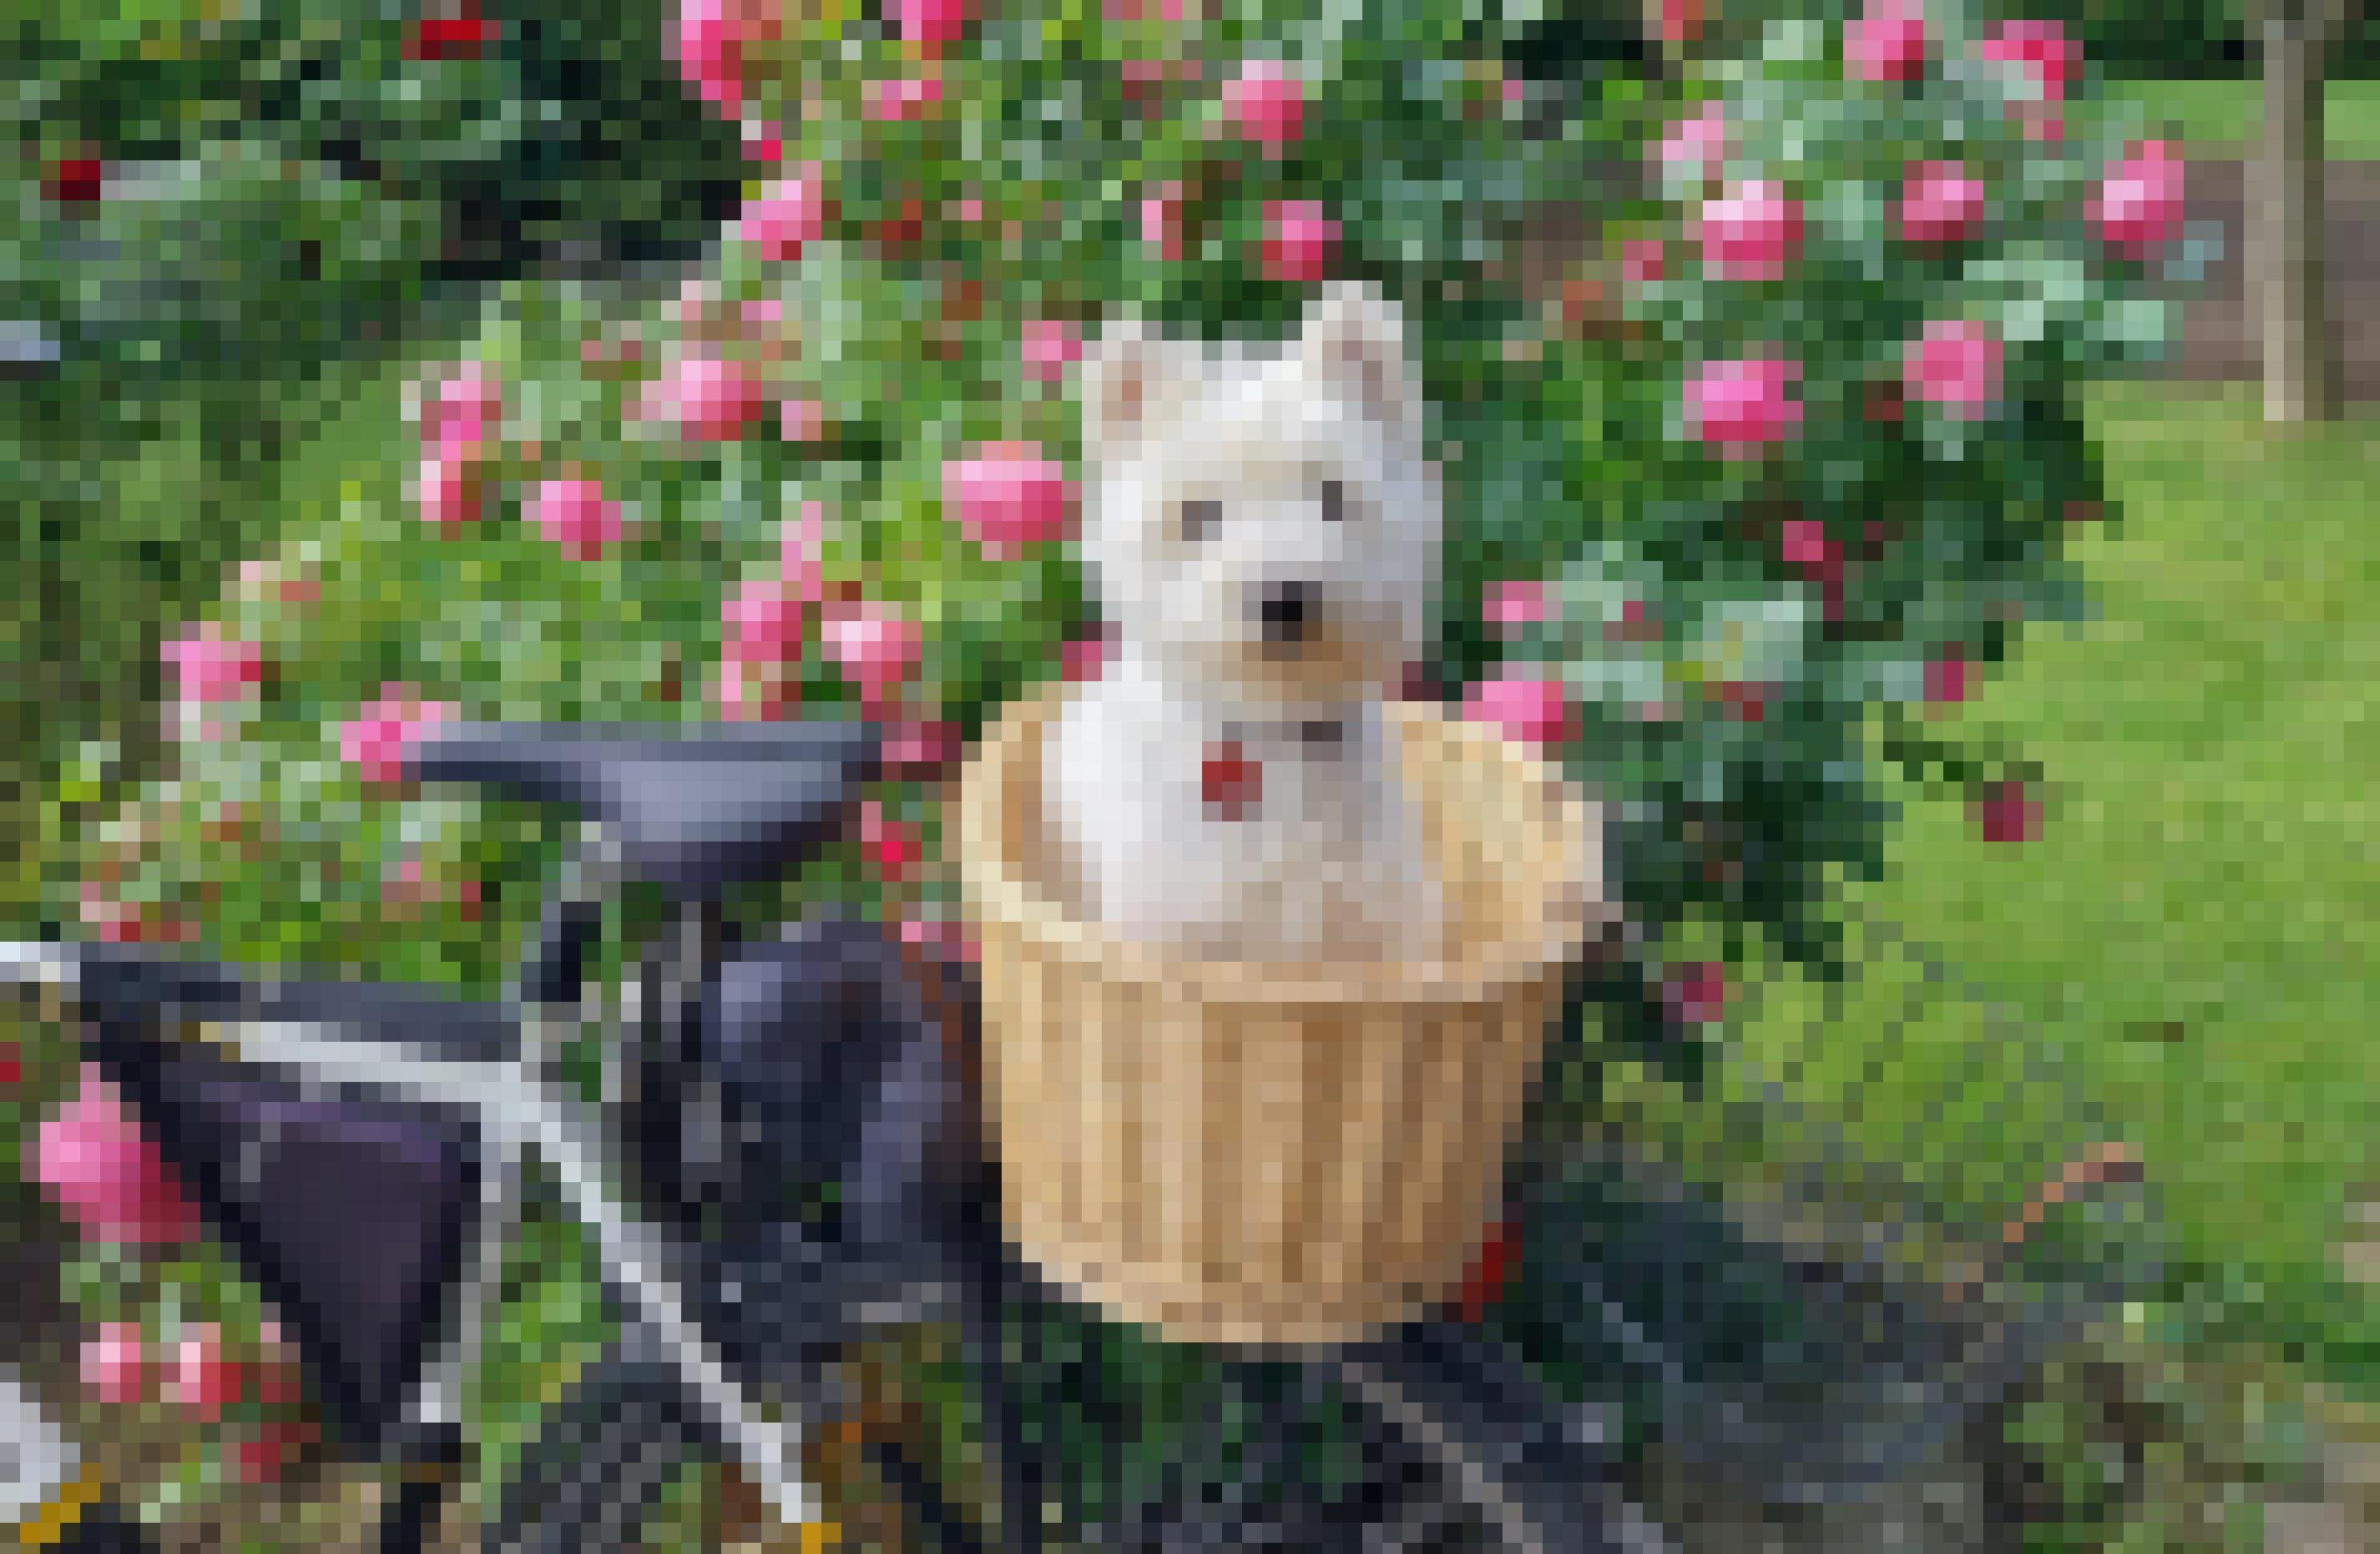 Ein kleiner Hund mit weißem Fell sitzt in einem Bastkorb, der auf dem Gepäckträger eines Fahrrads befestigt ist.